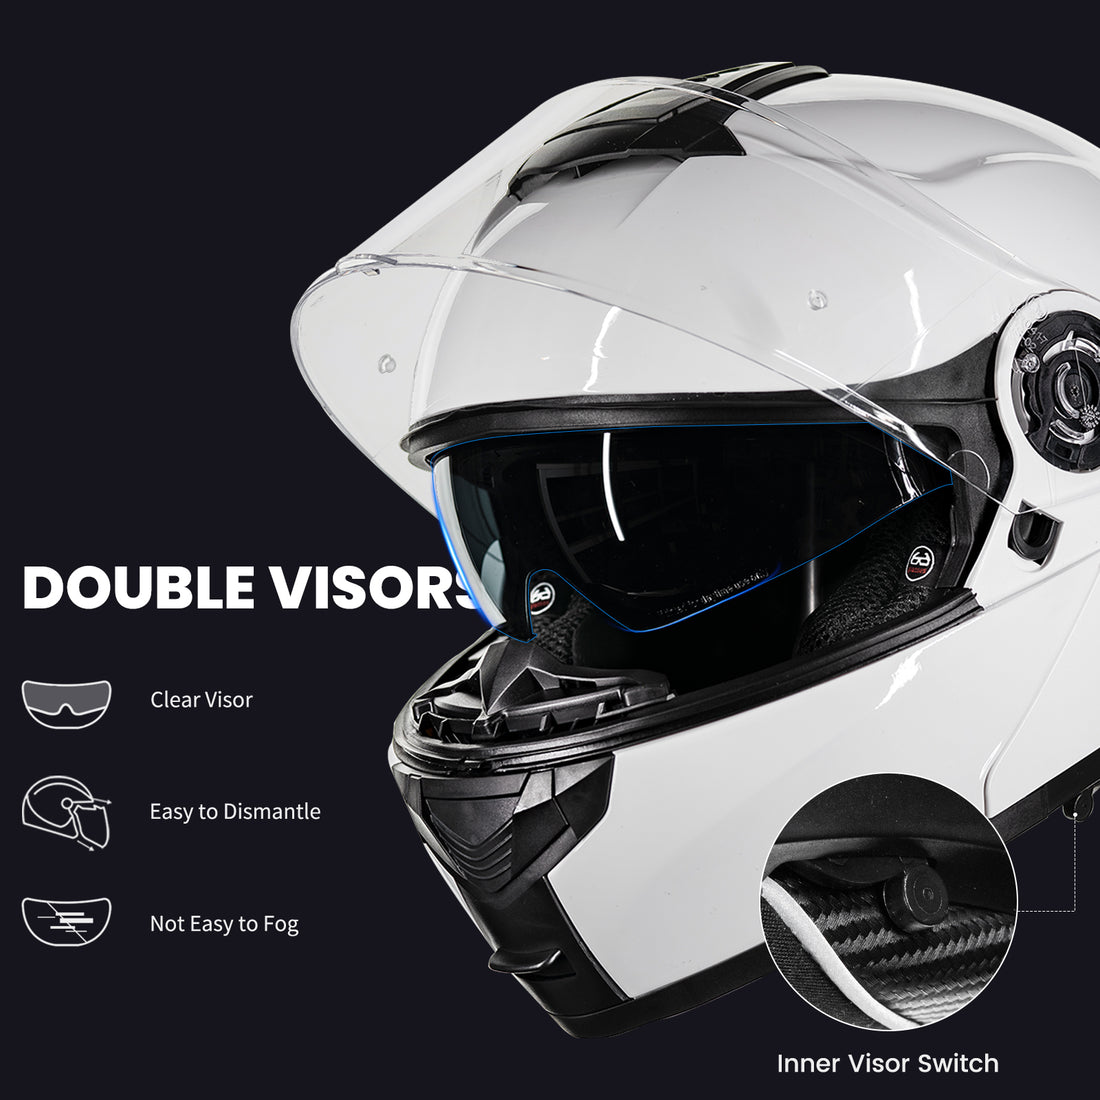 ILM Modular Flip up Full Face Bluetooth Motorcycle Helmet Model 159BT